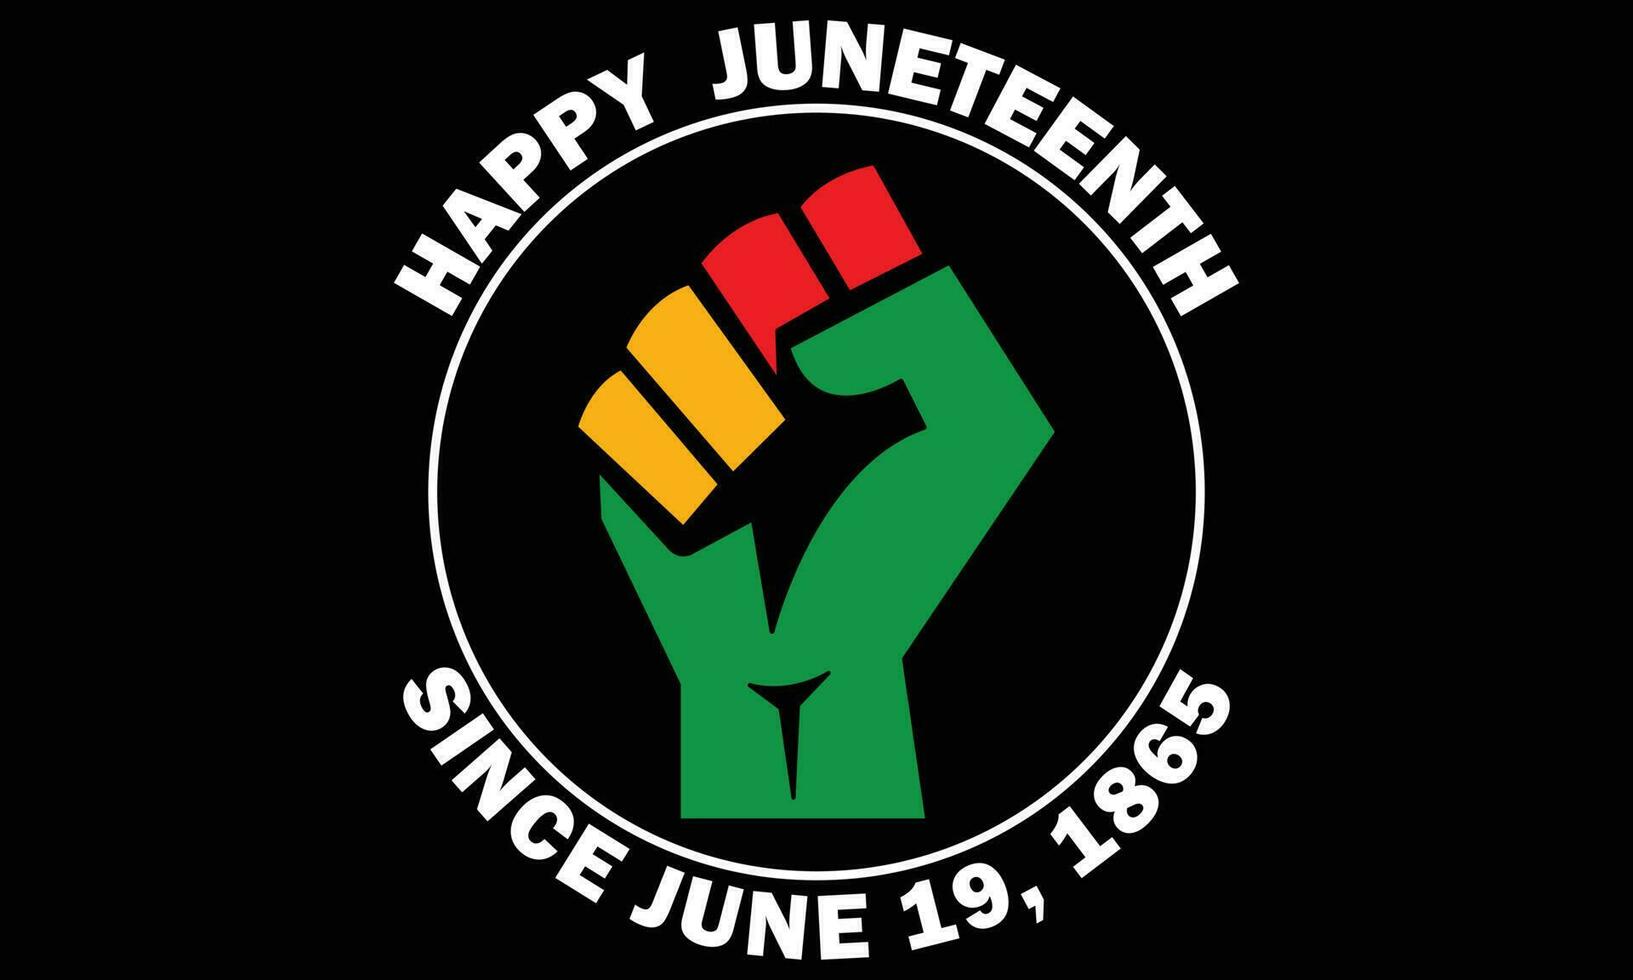 gelukkig juneteenth sinds juni 19, 1865 t-shirt ontwerp vector - juneteenth Afrikaanse Amerikaans onafhankelijkheid dag, juni 19. juneteenth vieren zwart vrijheid mooi zo voor t-shirt, banier, groet kaart ontwerp